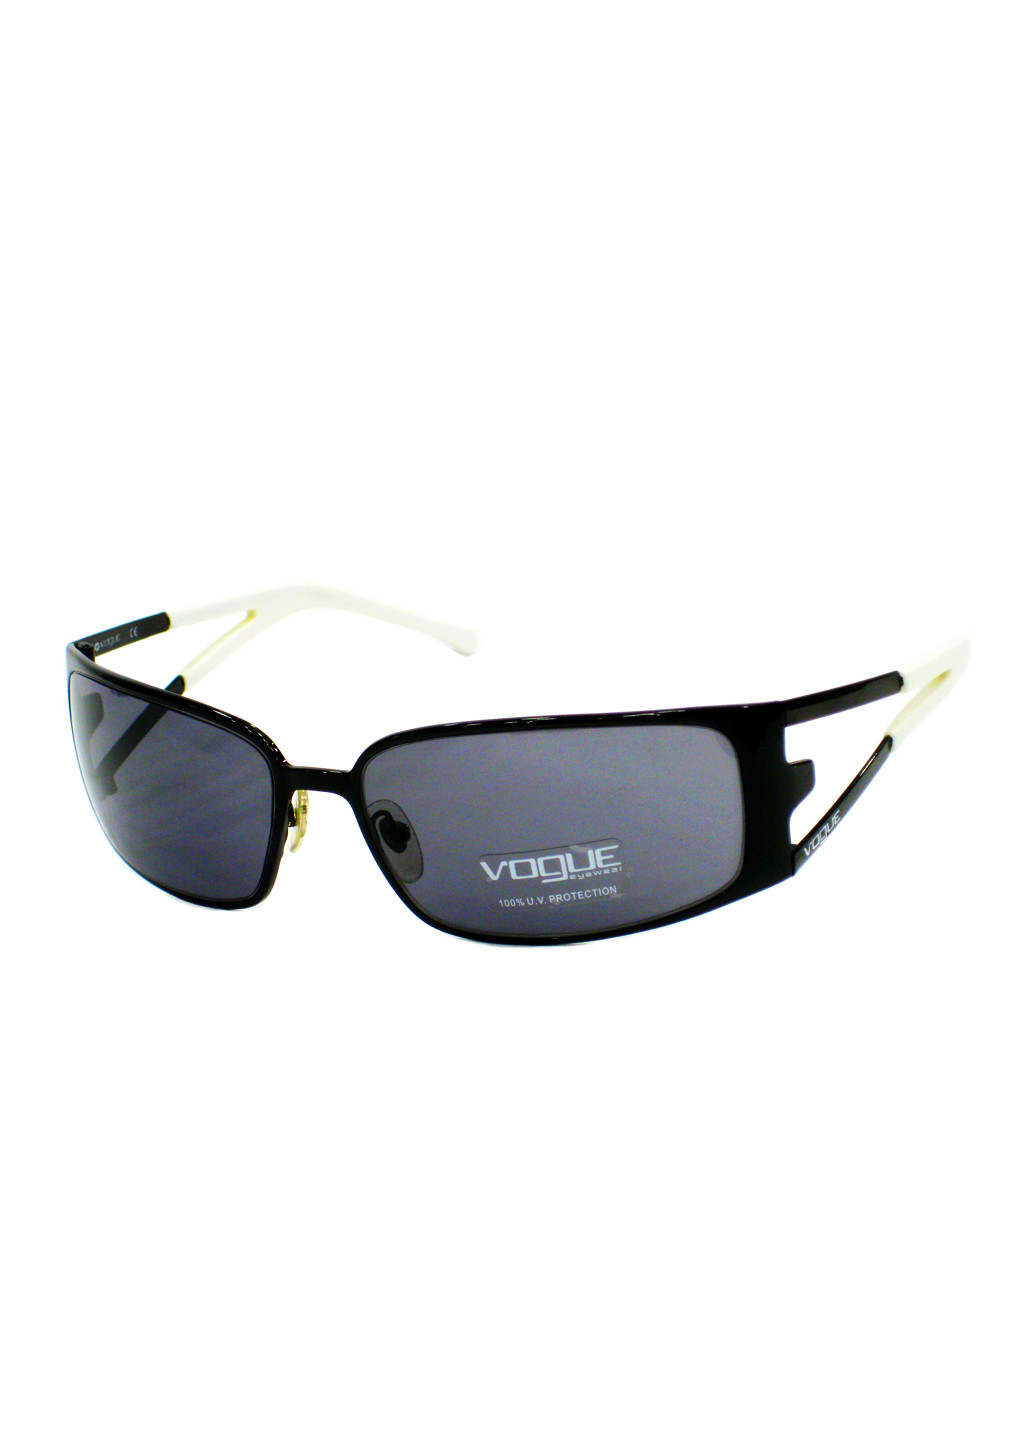 Cолнцезащитные очки Vogue vo3606-s 352/87 (206020328)